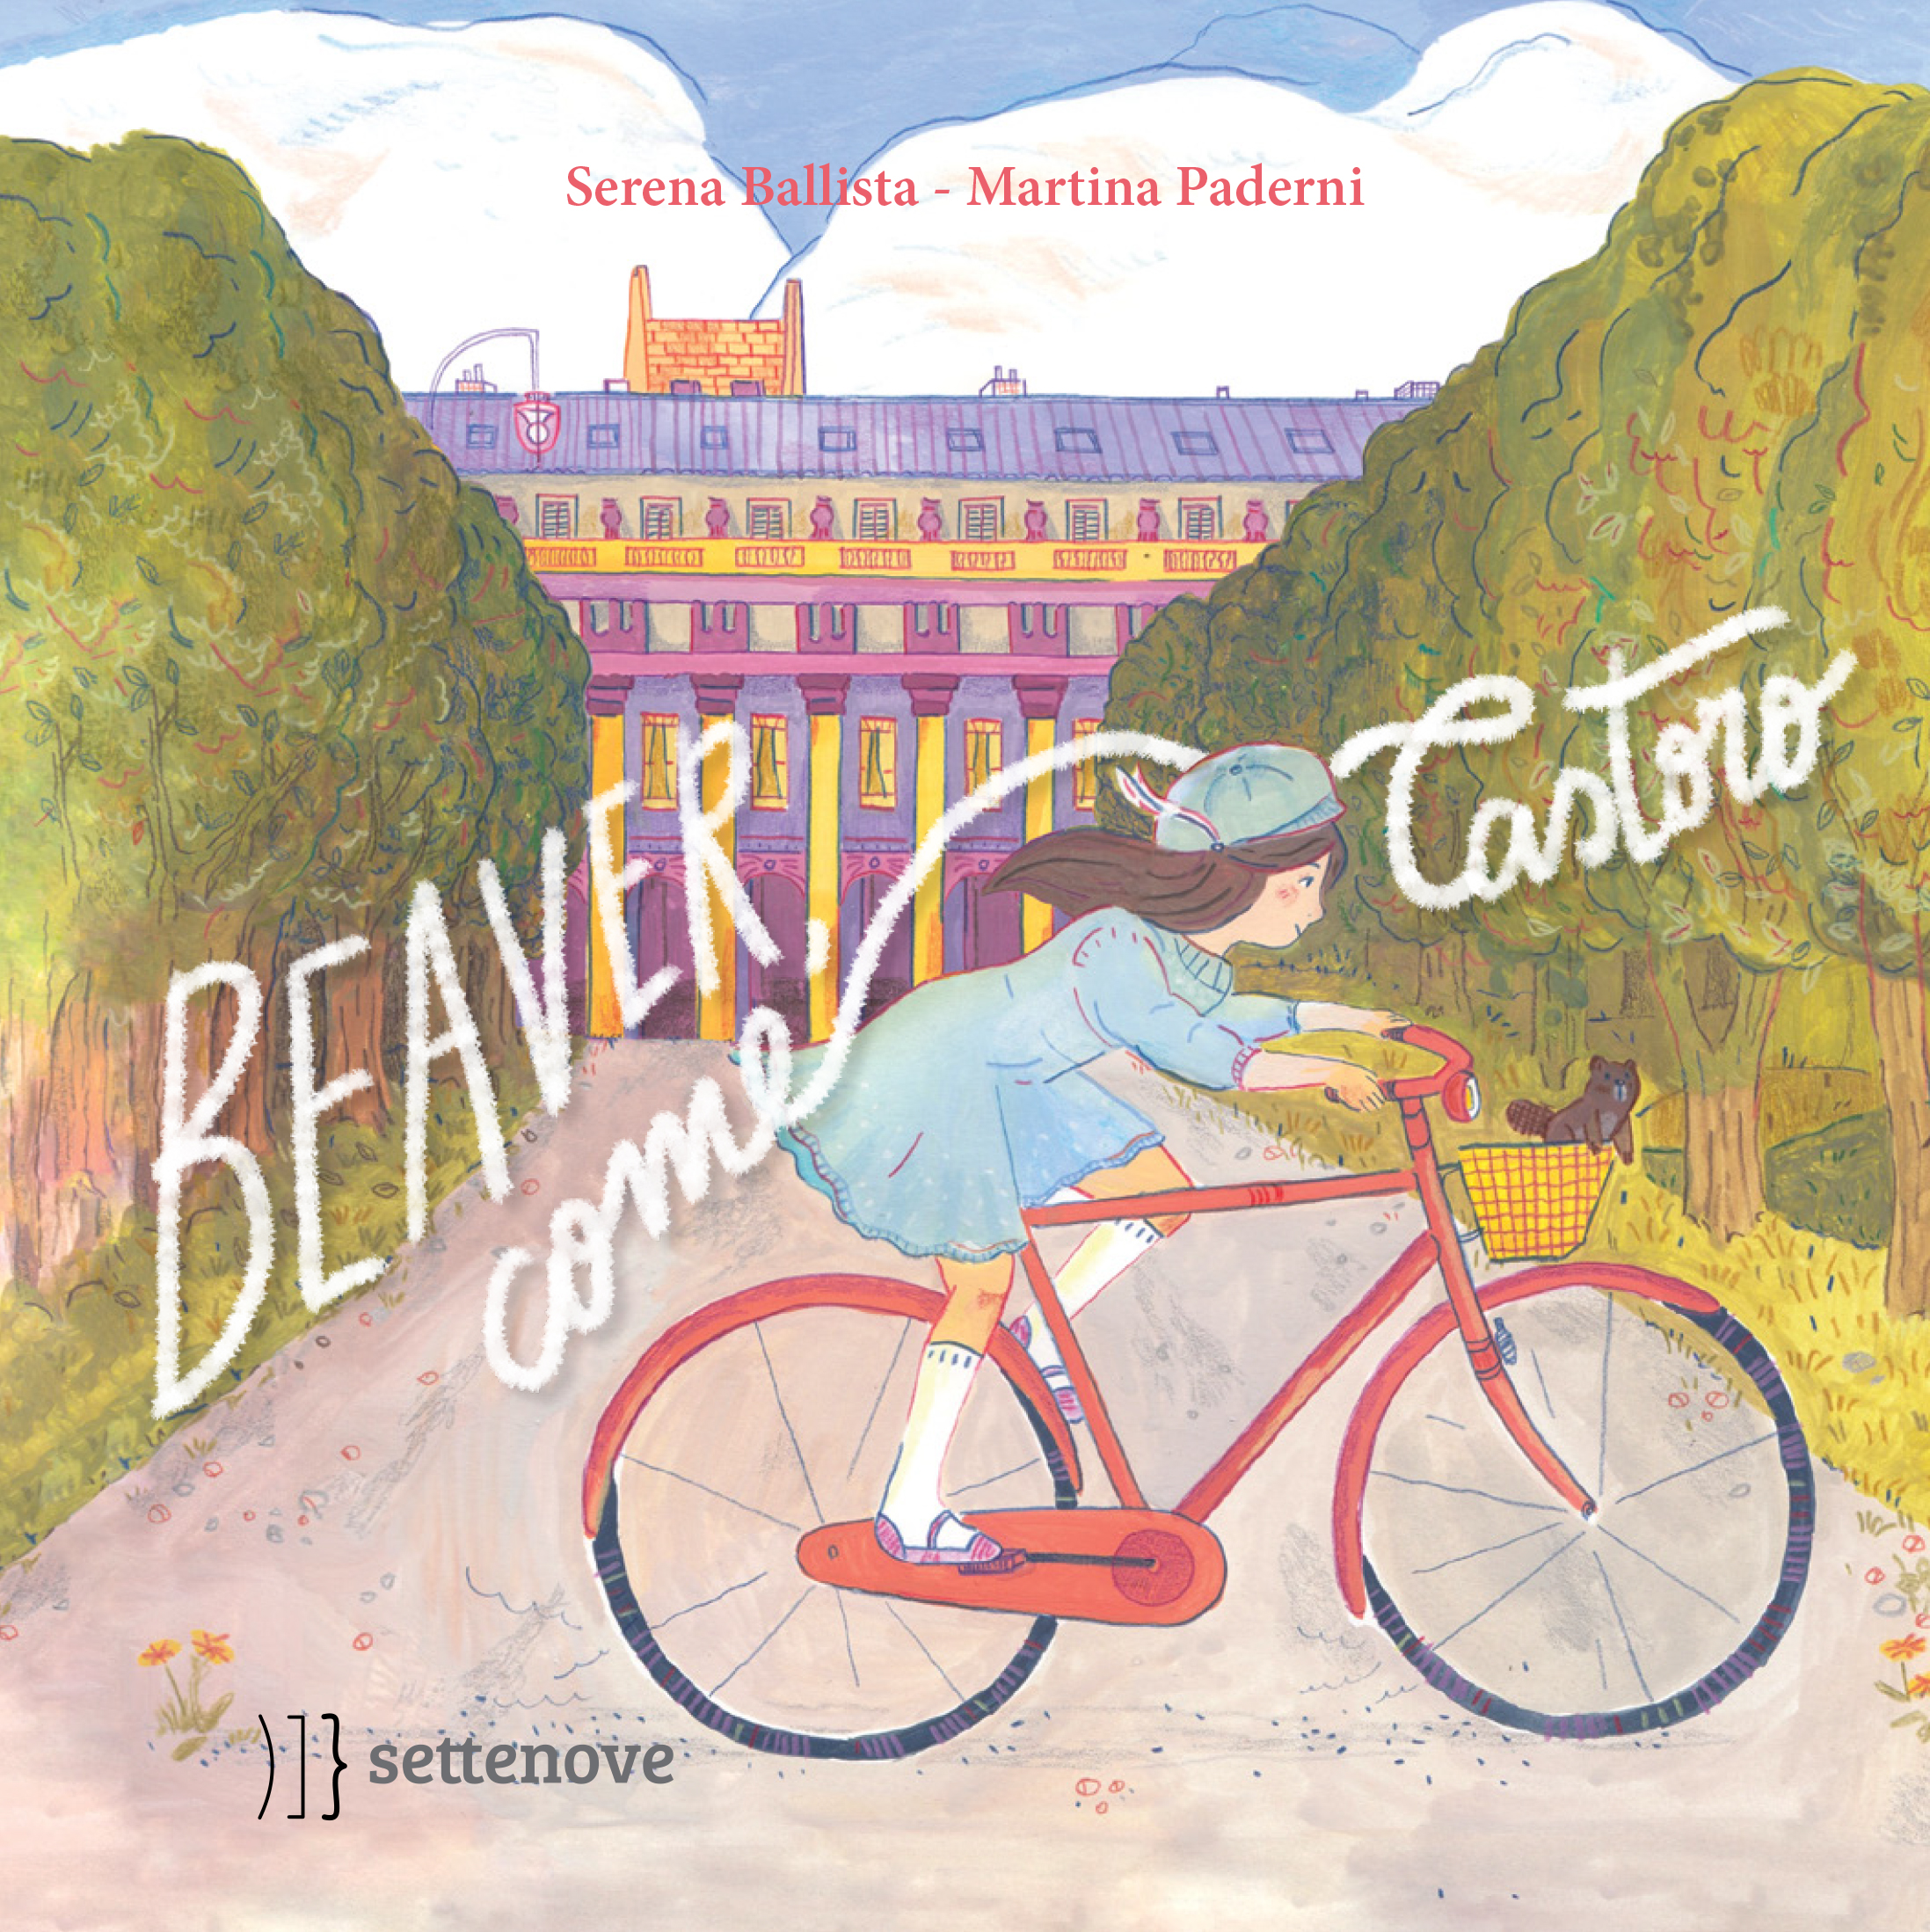 Sabato 27/11 presentazione del libro “Beaver, come Castoro” con l’autrice Serena Ballista